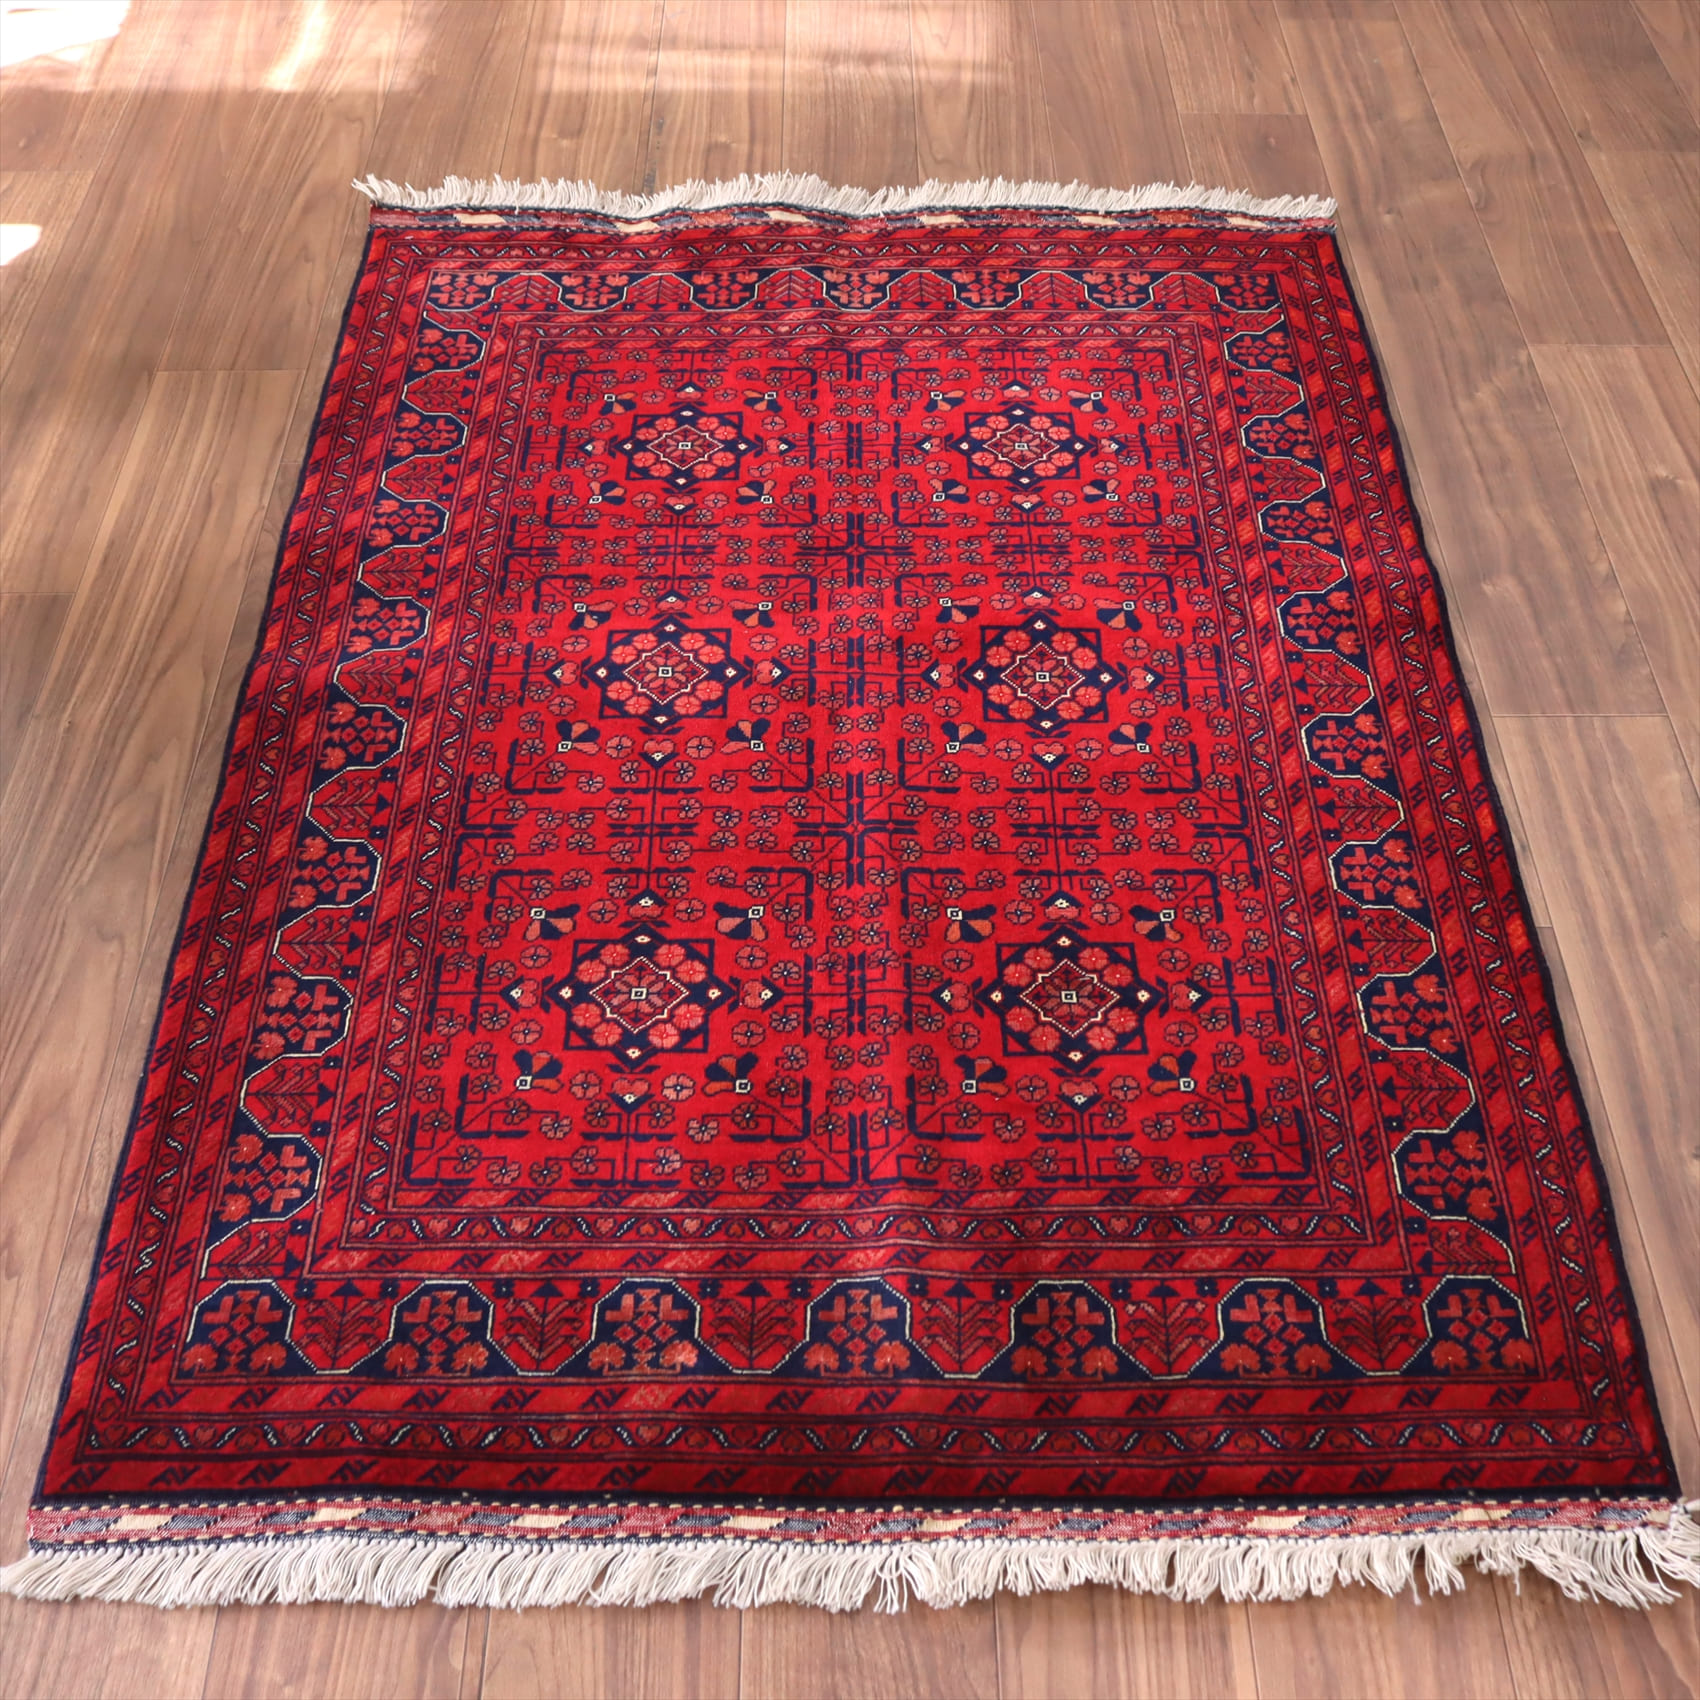 ビリジック 赤いじゅうたん 手織りラグ145×102cm ビロードのようなツヤのある緻密な織り